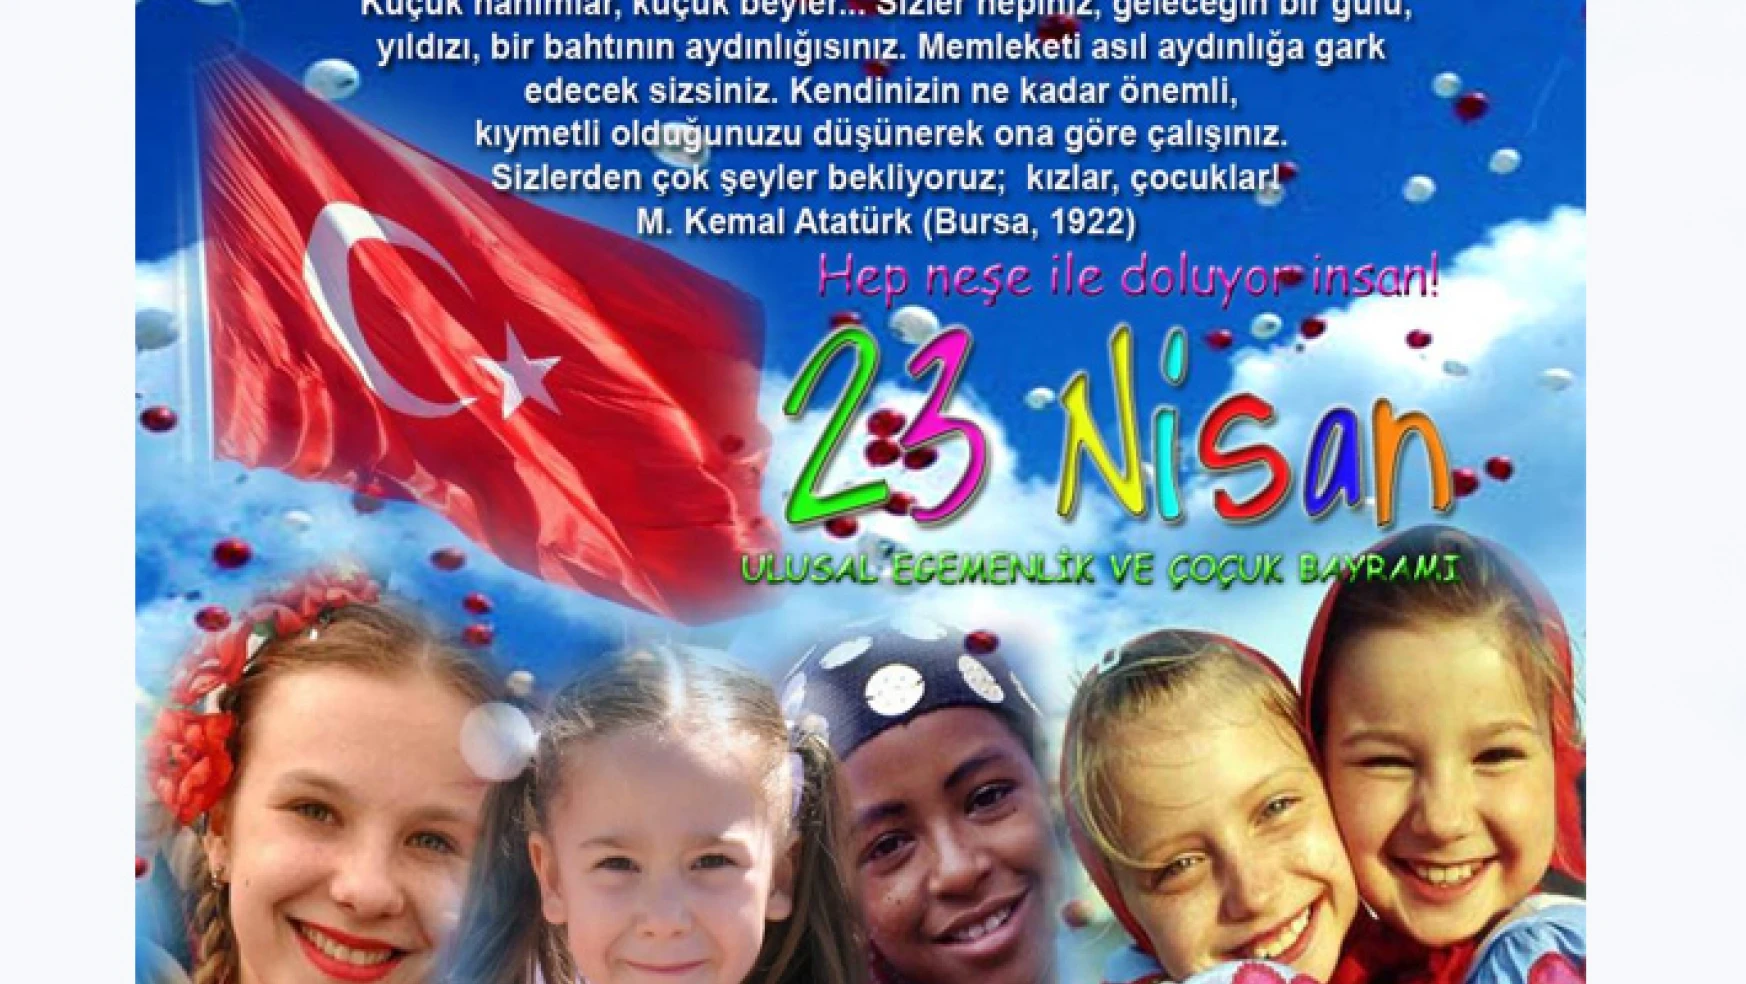 23 Nisan Ulusal Egemenlik ve Çocuk Bayramı'nı kutluyoruz